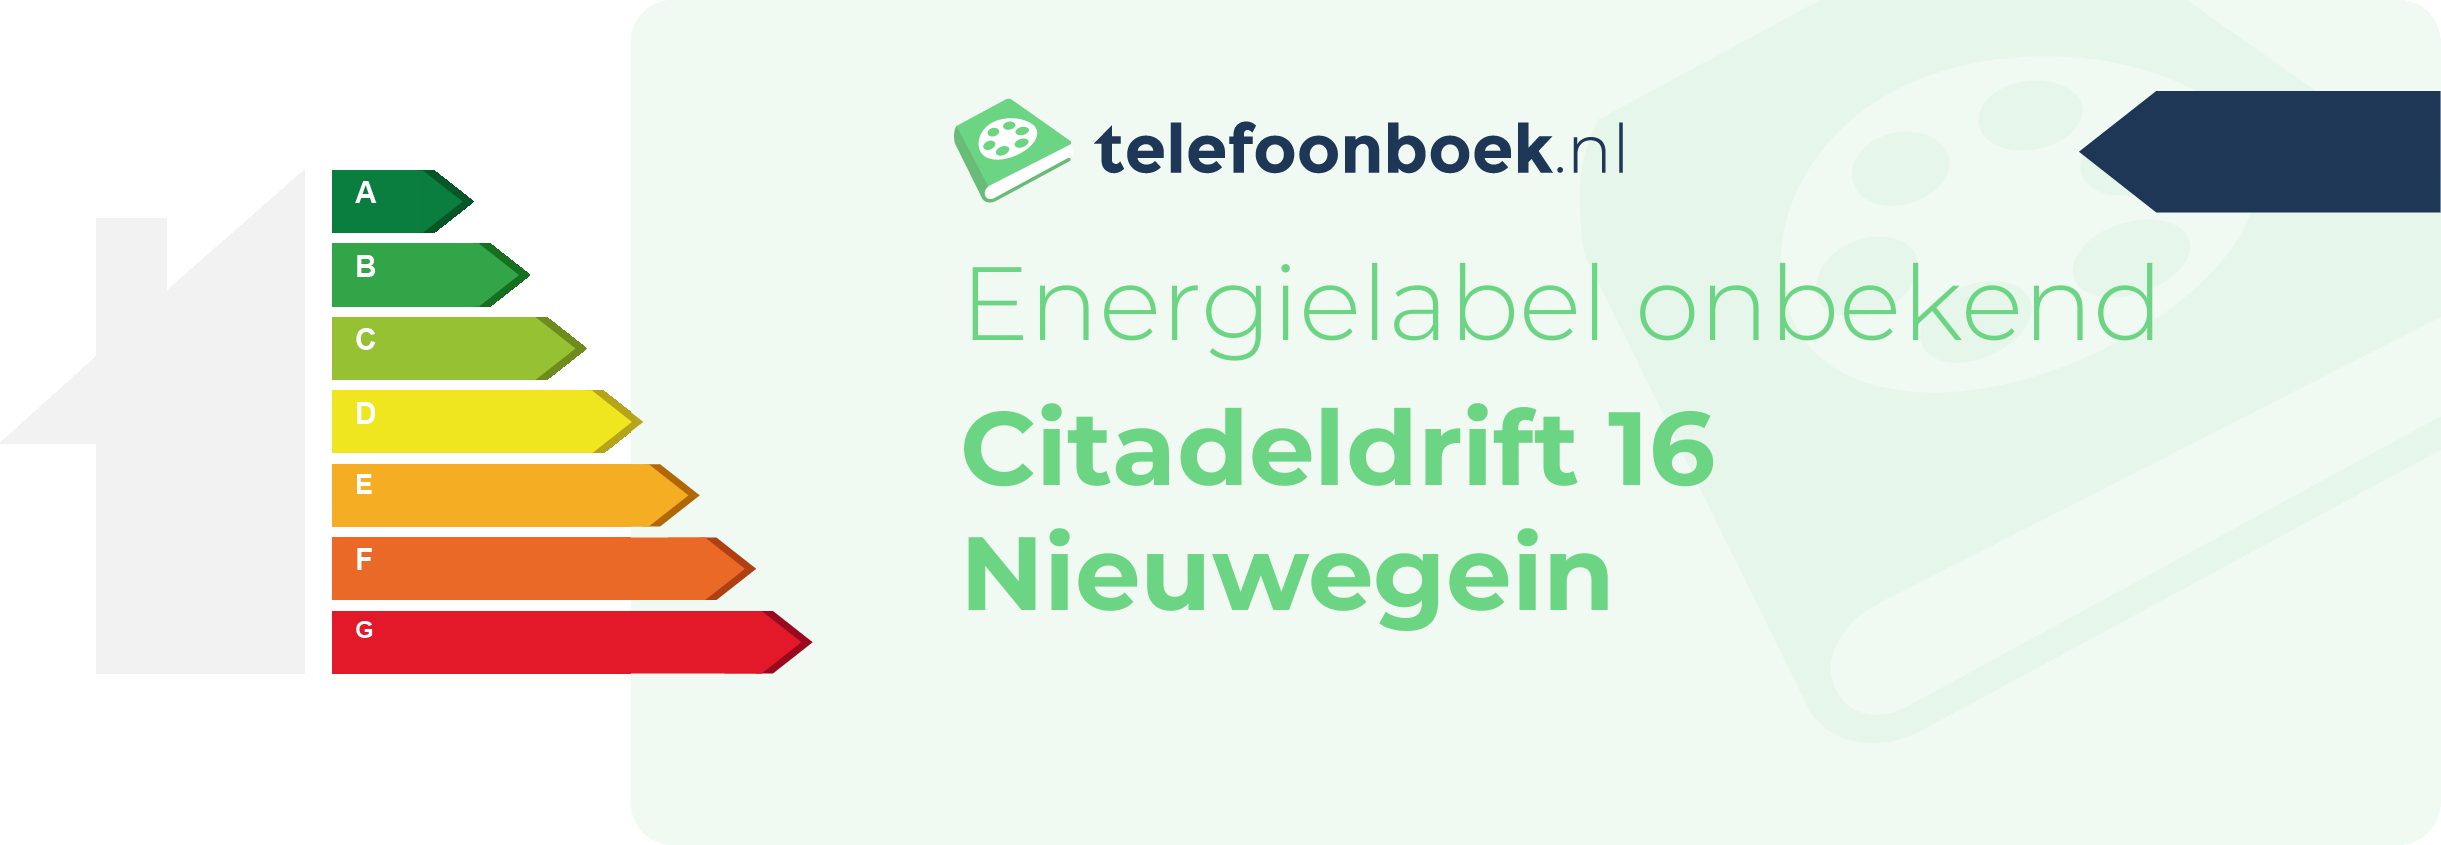 Energielabel Citadeldrift 16 Nieuwegein